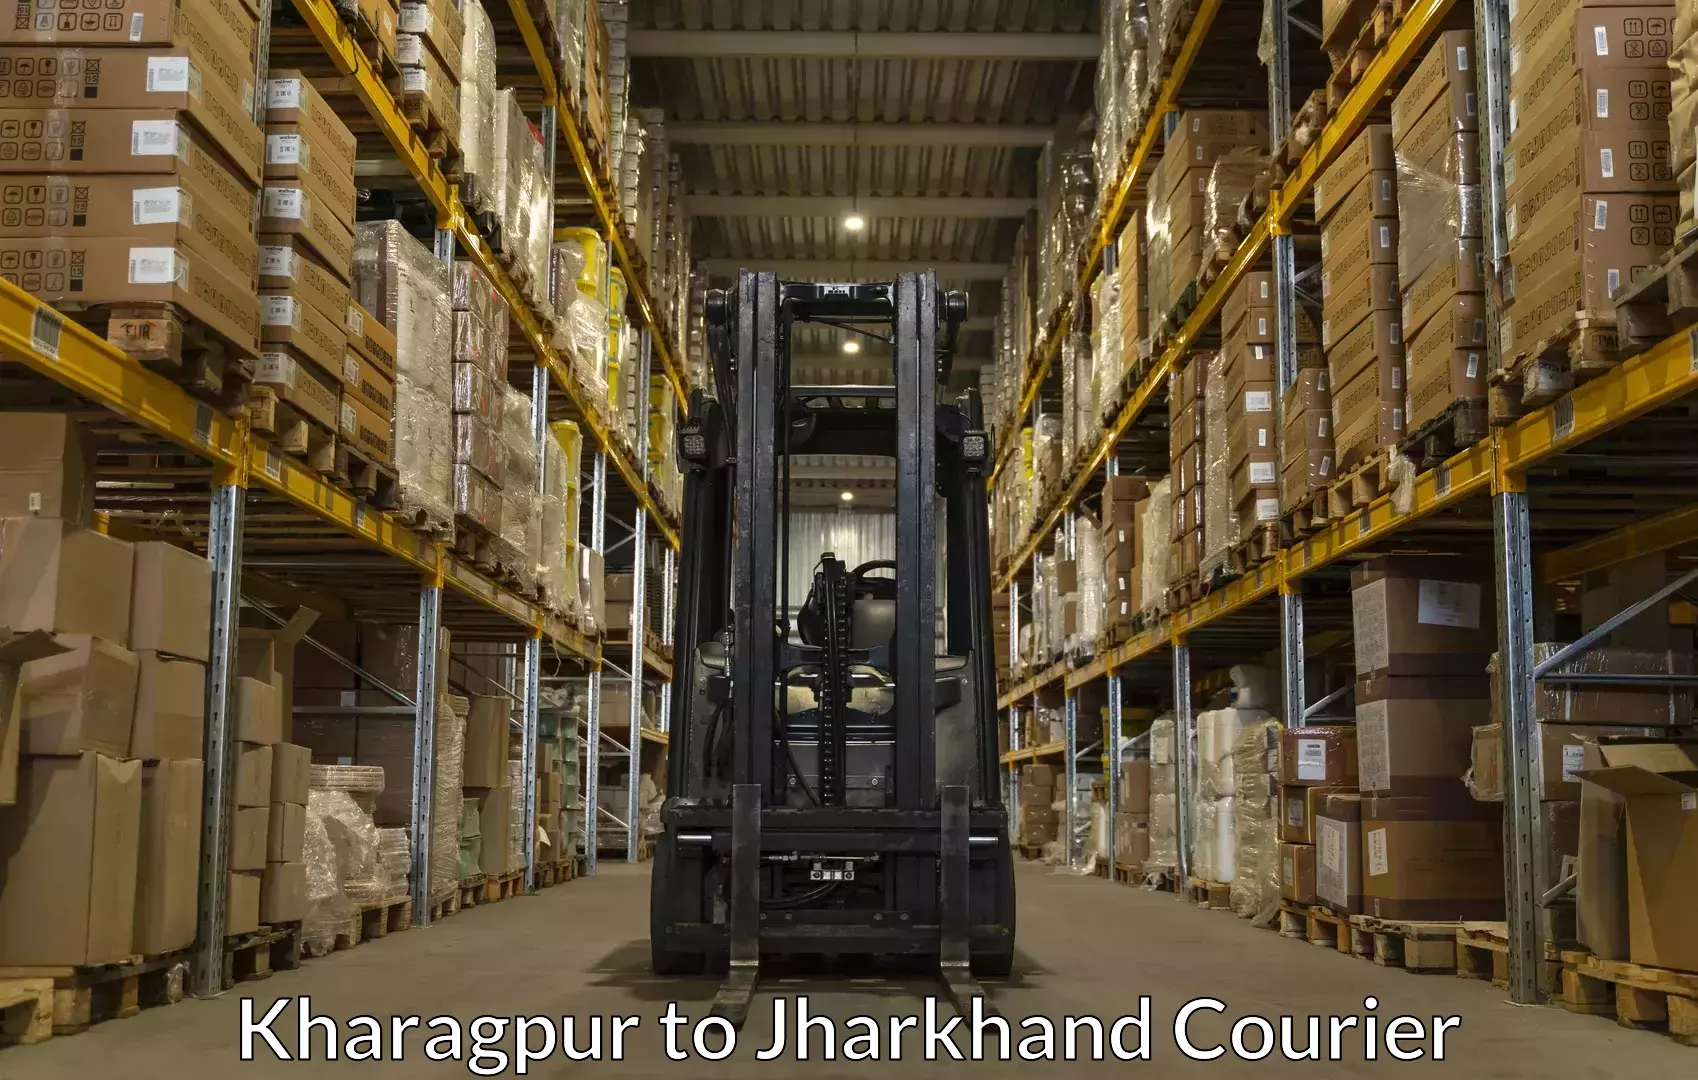 Baggage shipping service Kharagpur to Godda